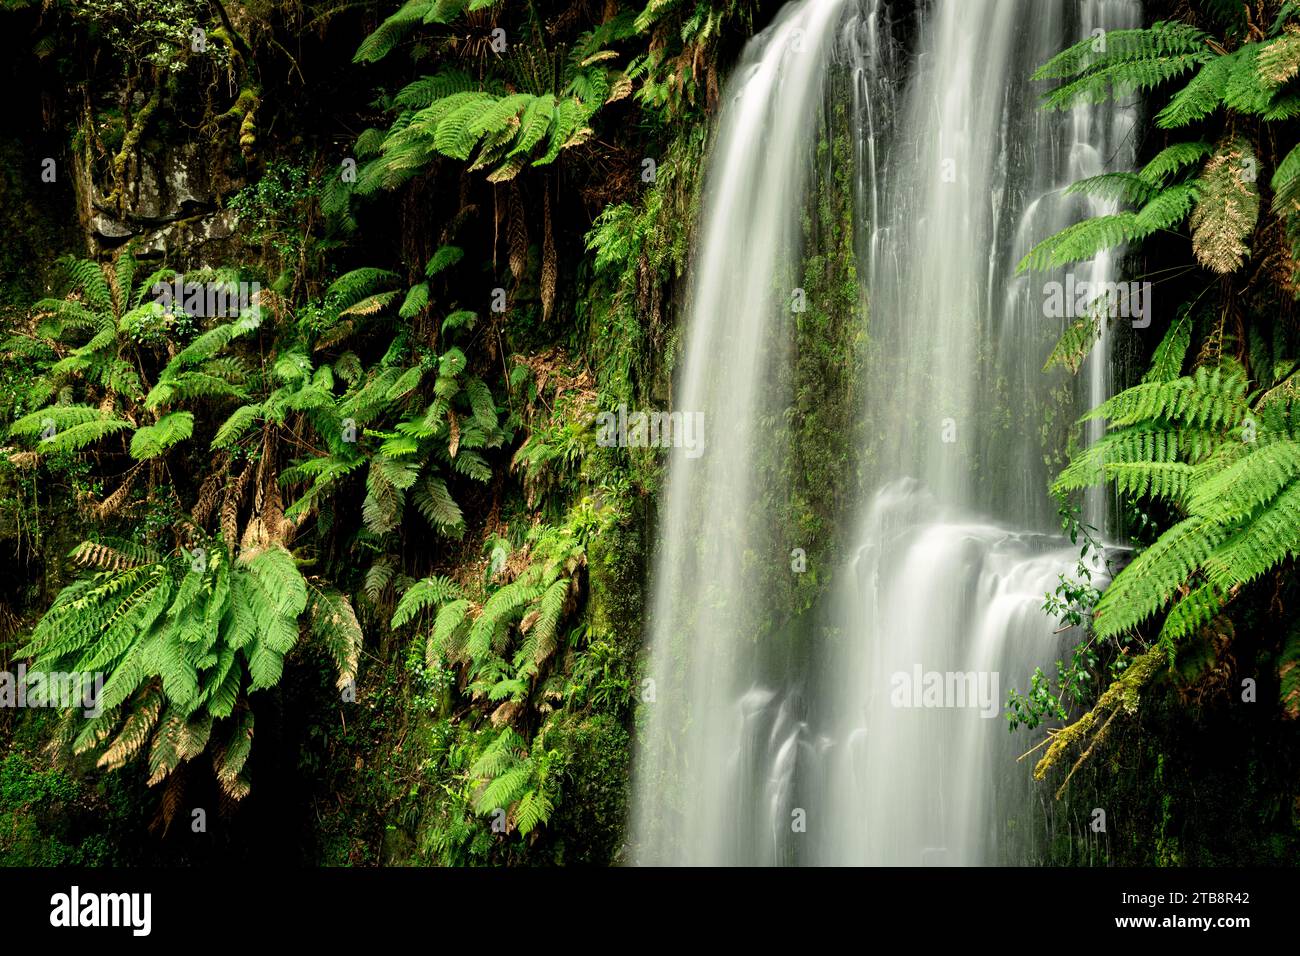 Las cataratas Beauchamp están bien escondidas en la selva tropical del Parque Nacional Great Otway. Foto de stock